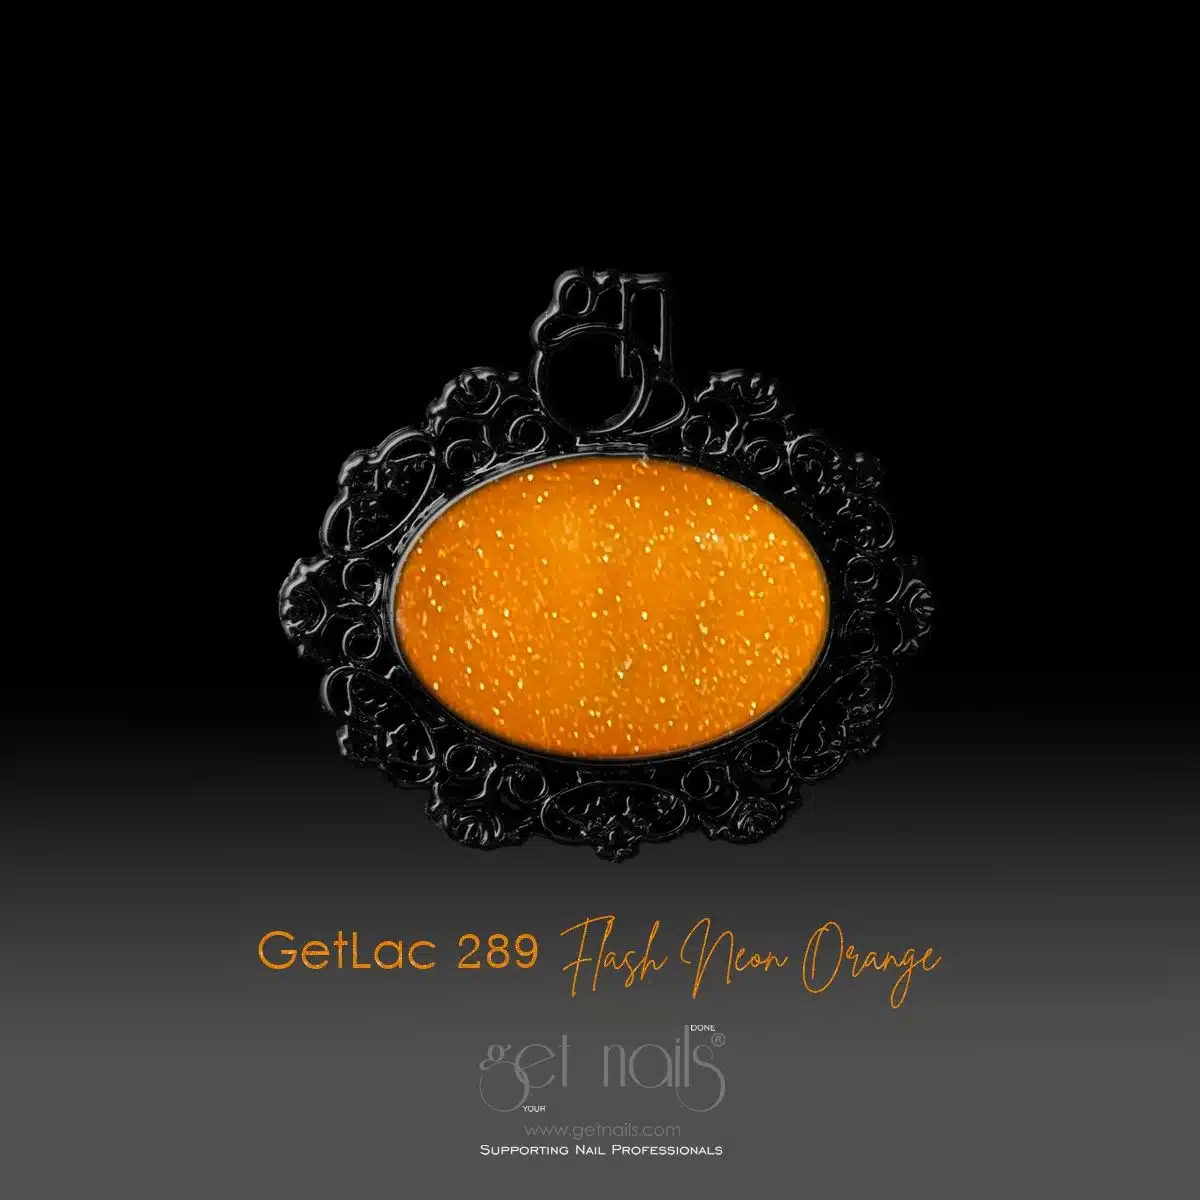 Get Nails Austria - GetLac 289 Flash Neon Orange 15g